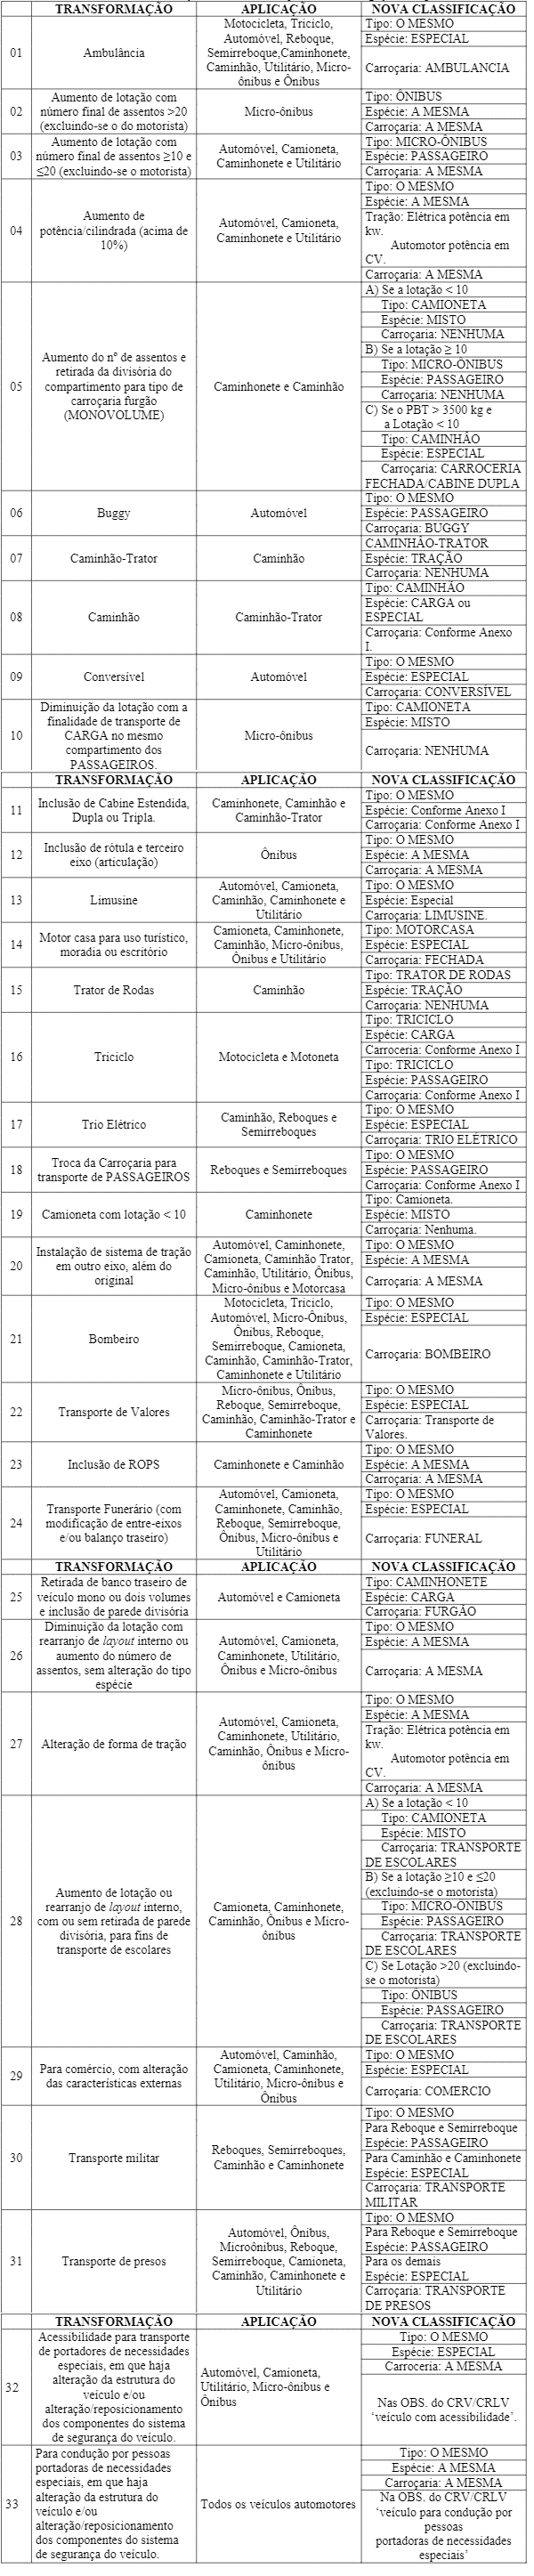 Ilustração referente a Tabela II - Transformações de Veículos sujeitos a homologação compulsória.